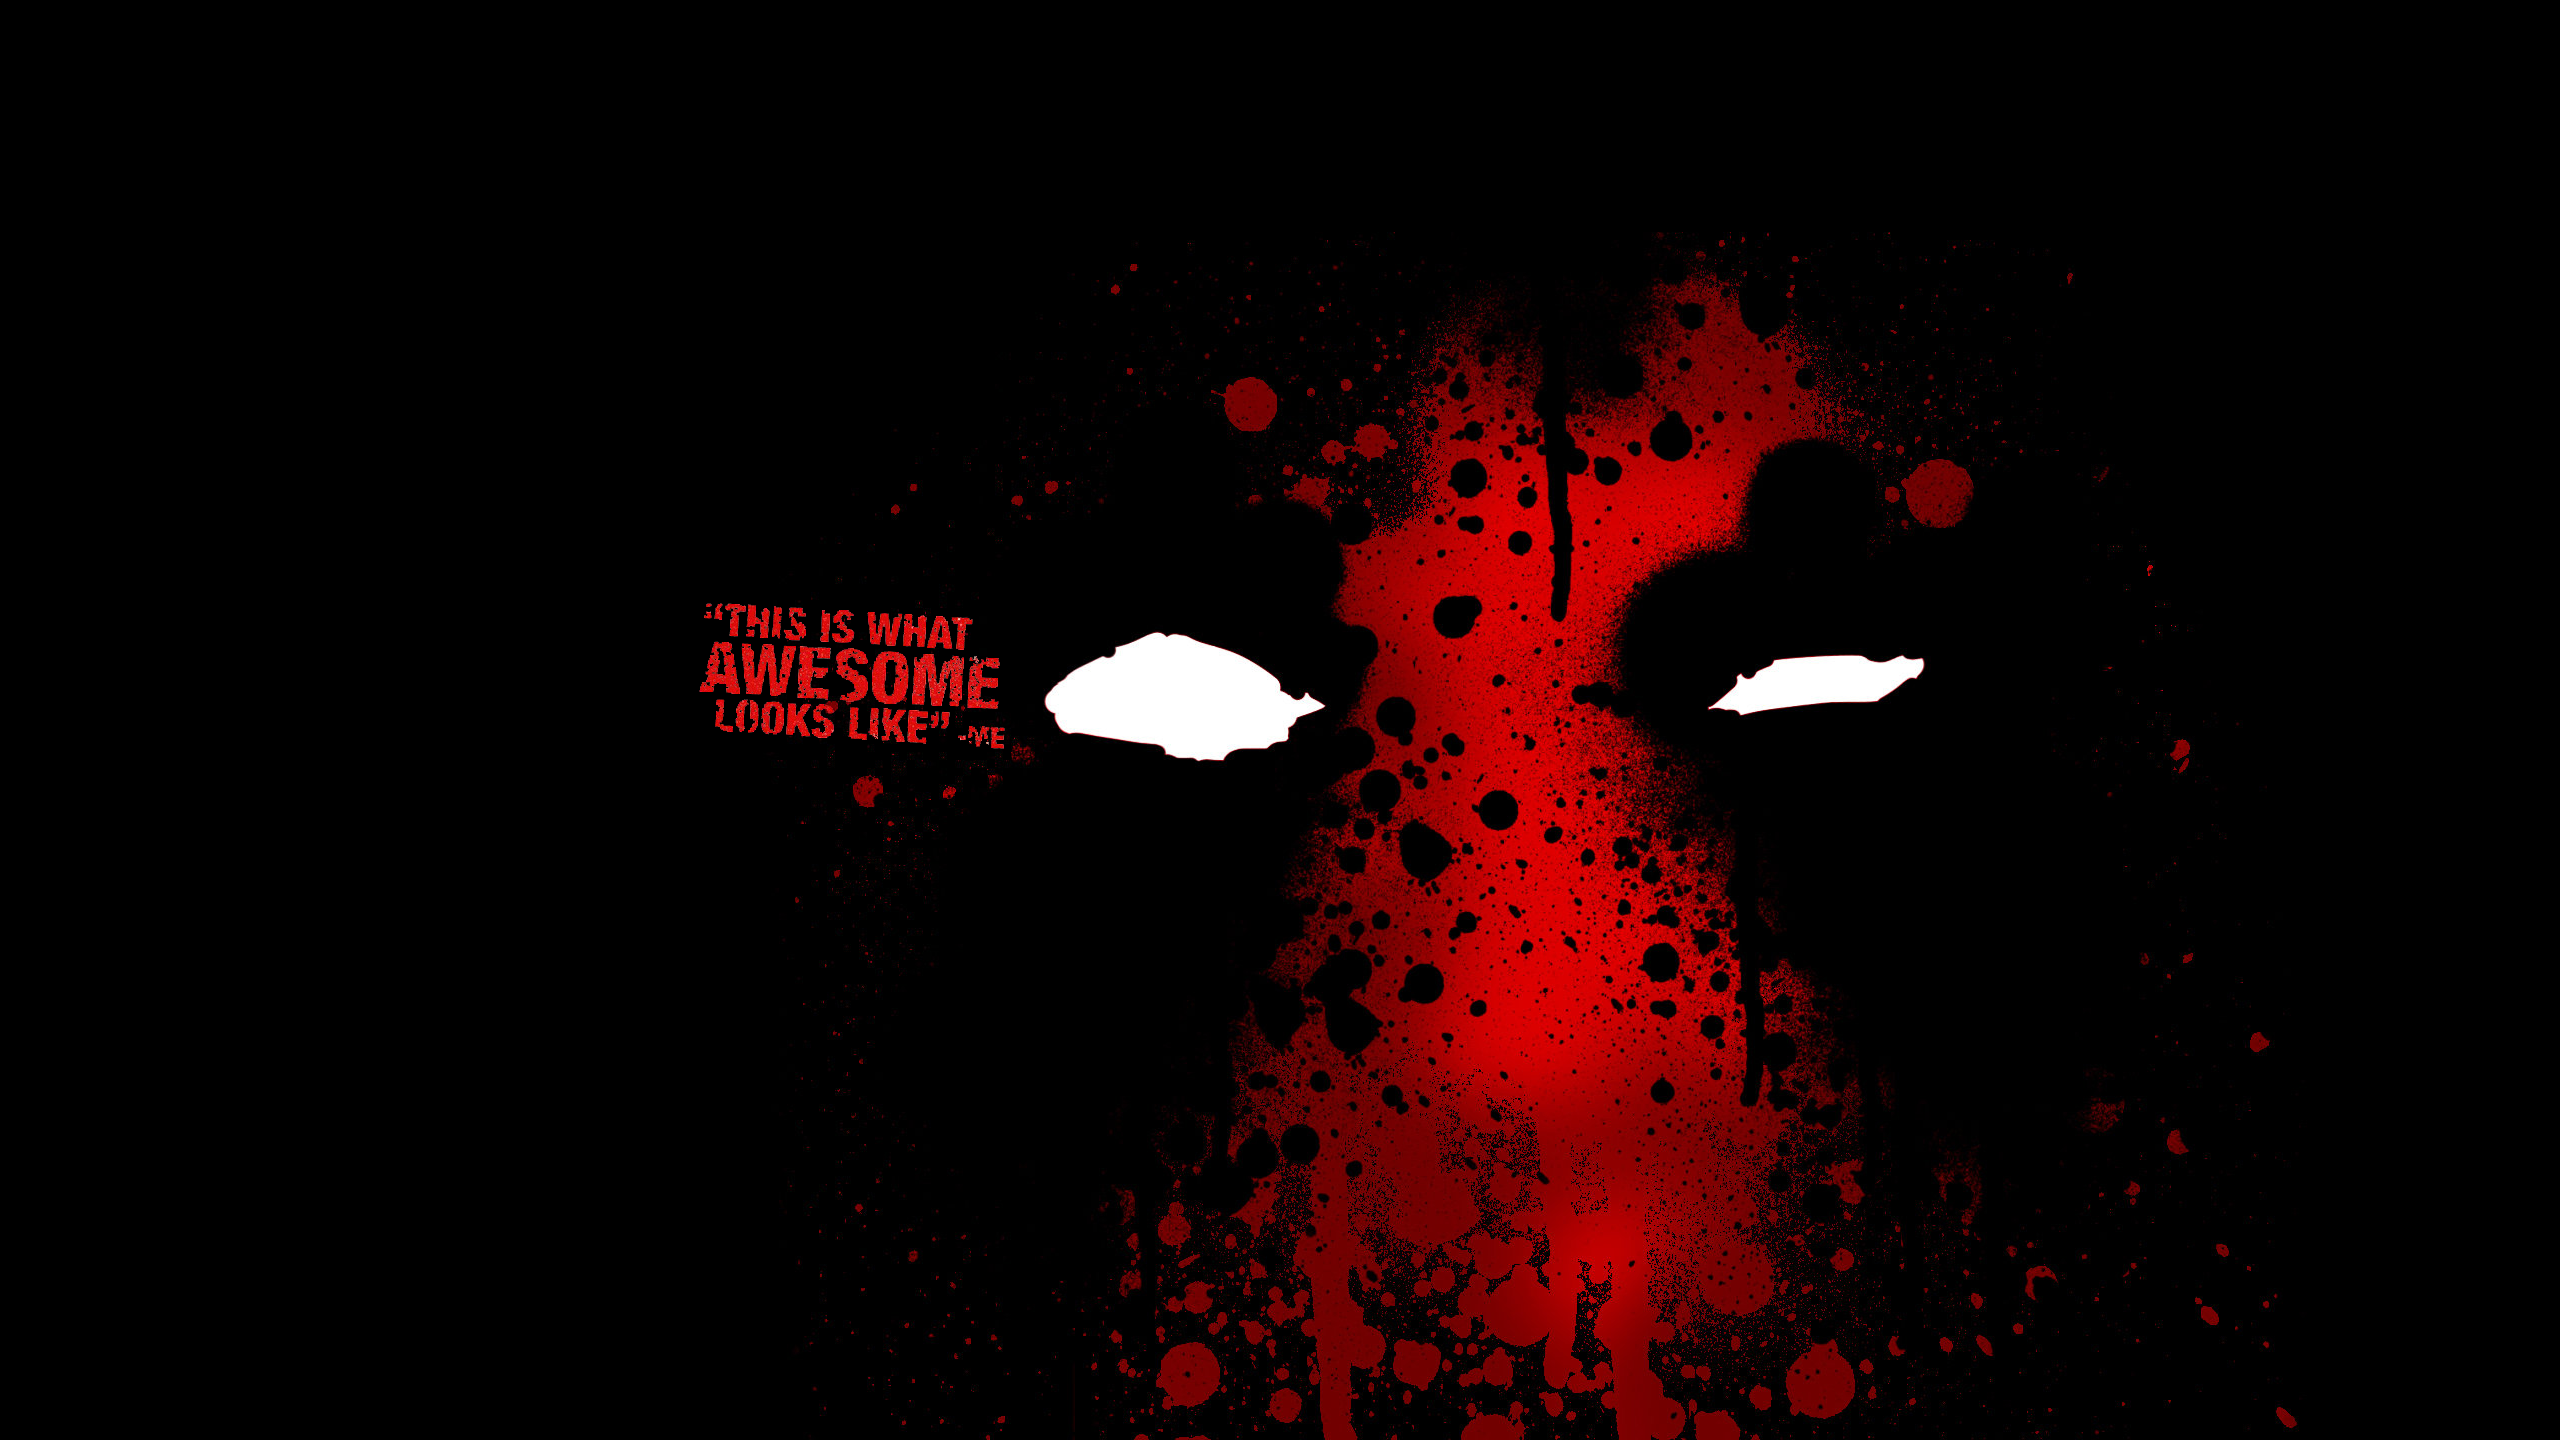 General 2560x1440 Deadpool antiheroes dark black red black background Marvel Comics